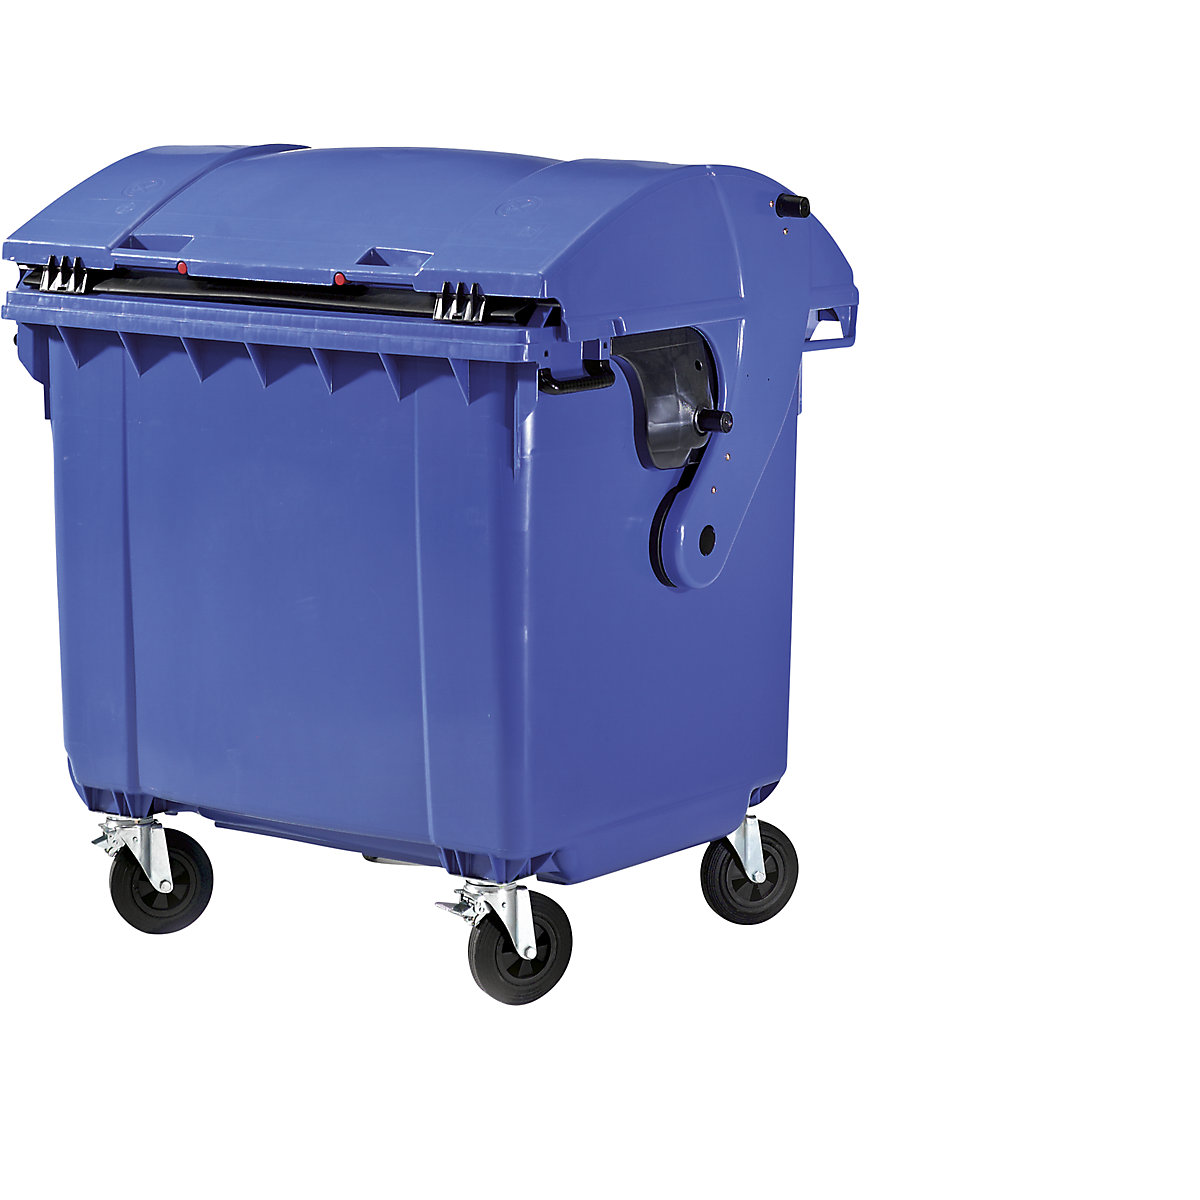 Conteneur à ordures en plastique conforme DIN EN 840, capacité 1100 l, l x h x p 1360 x 1465 x 1100 mm, couvercle coulissant, sécurité enfants, coloris bleu